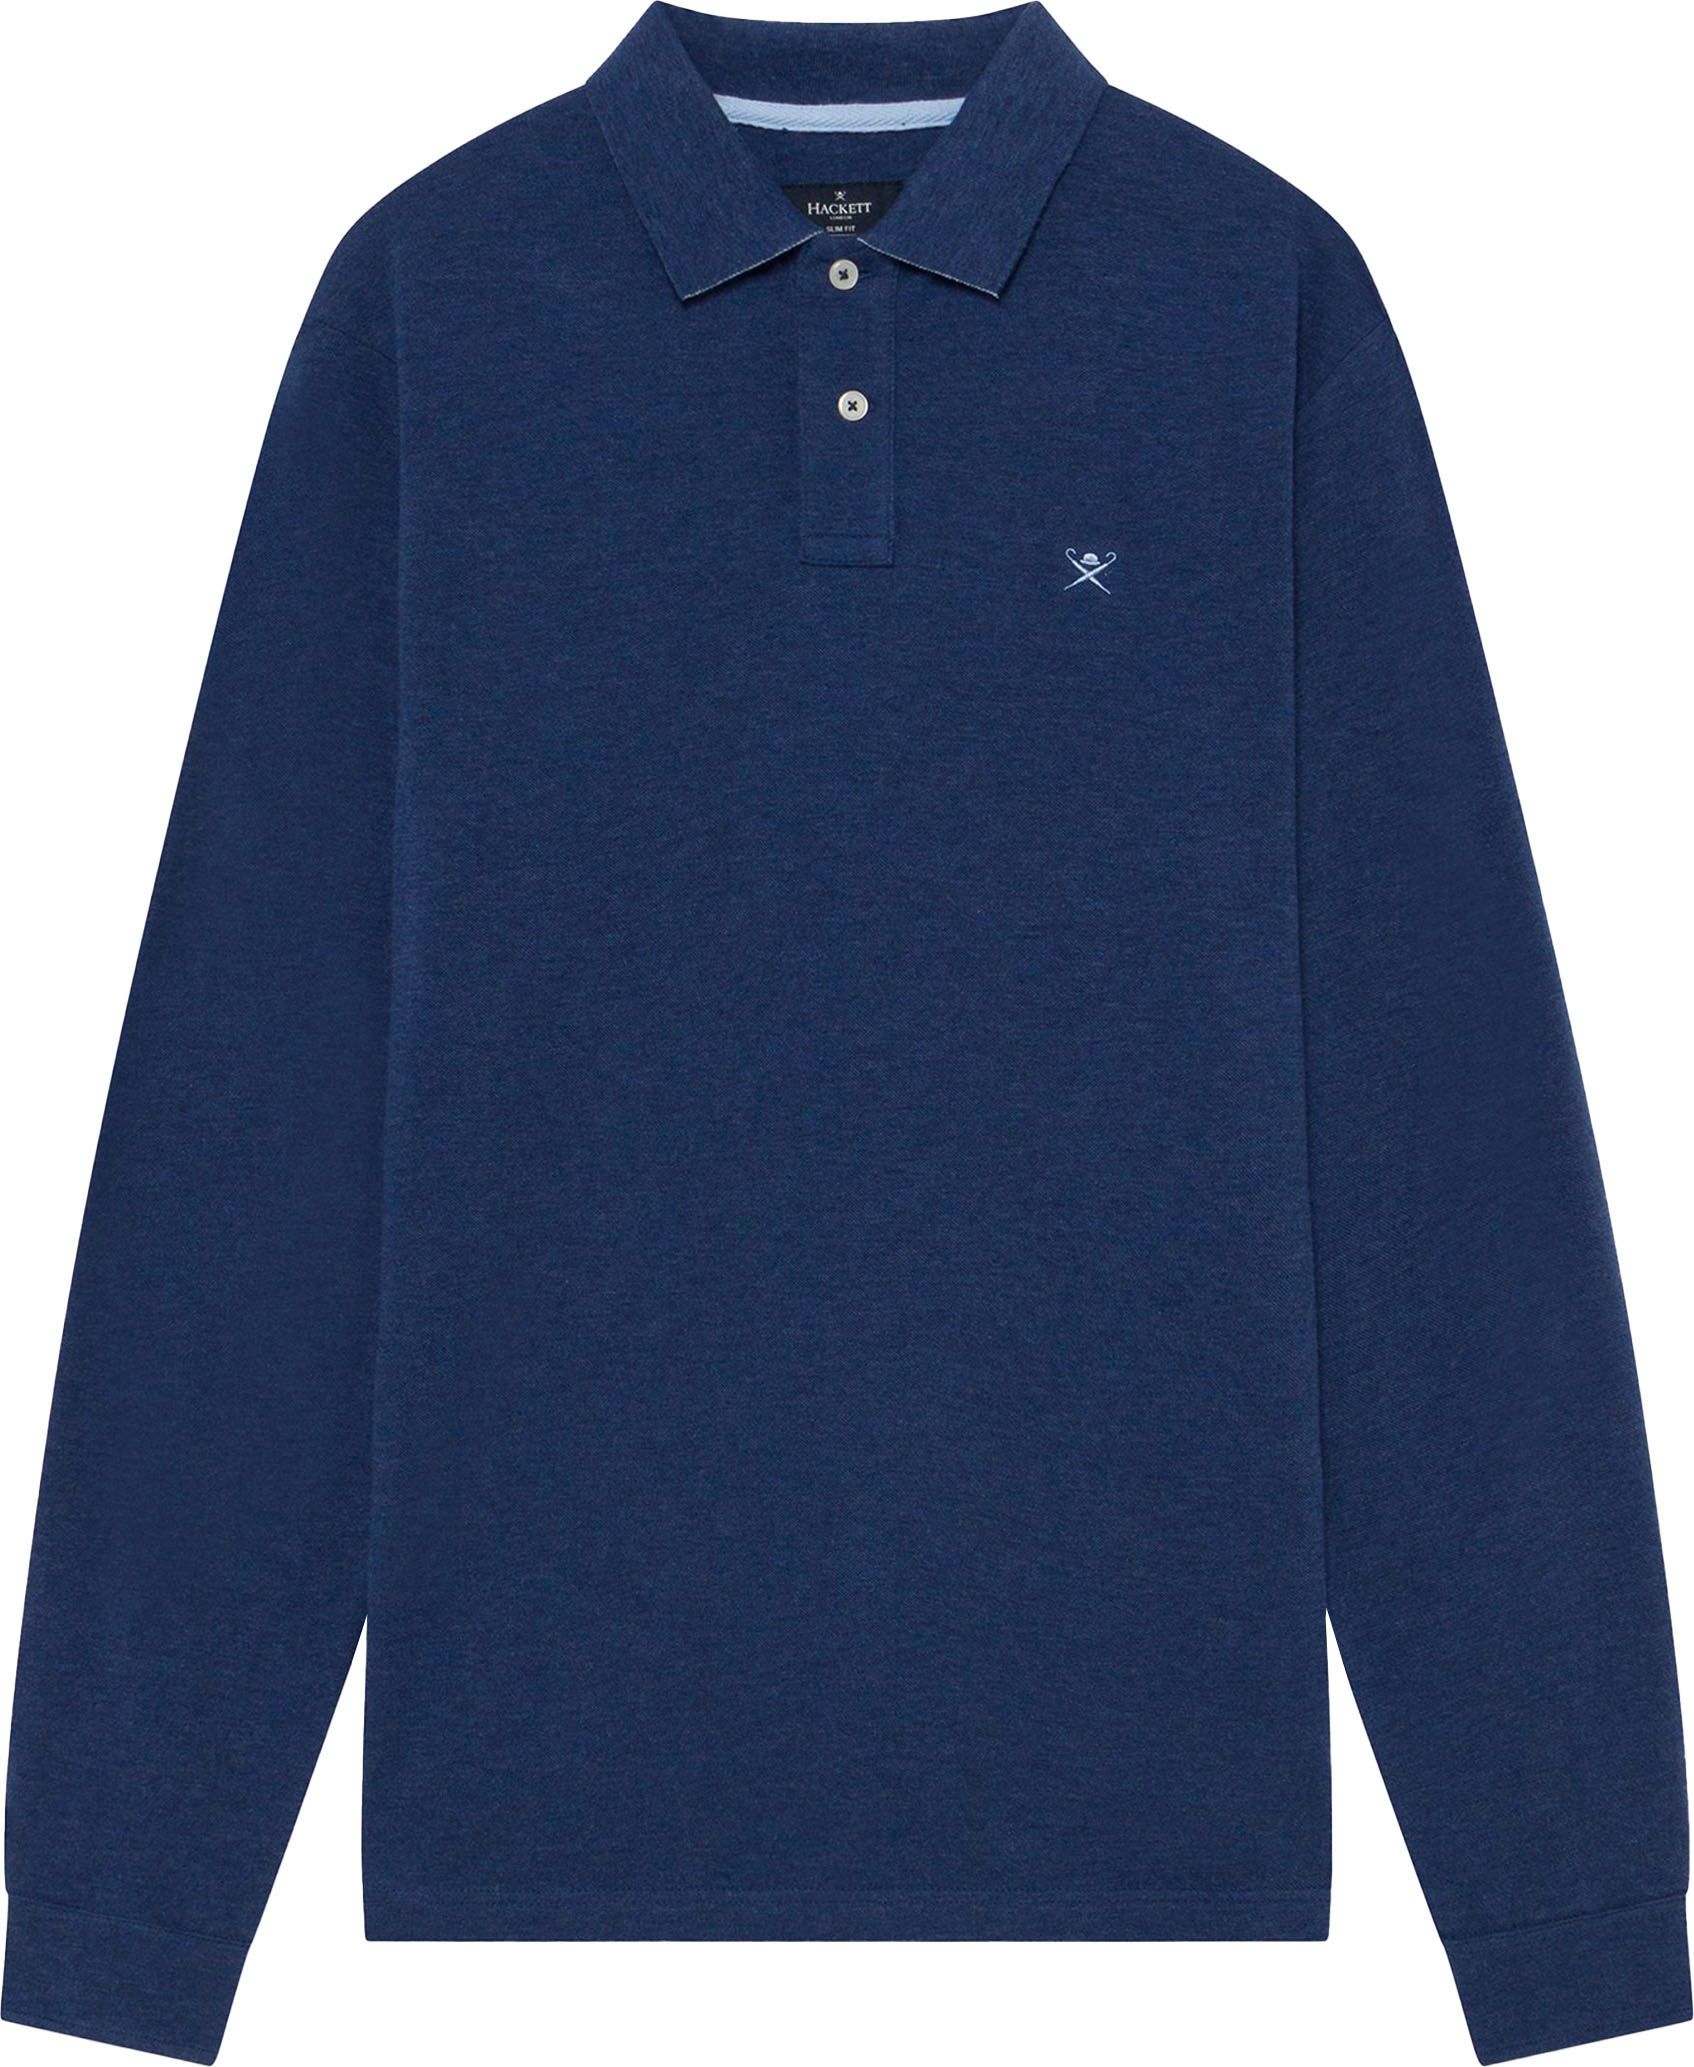 Hackett LS Polo Shirt Aqua Blue size L